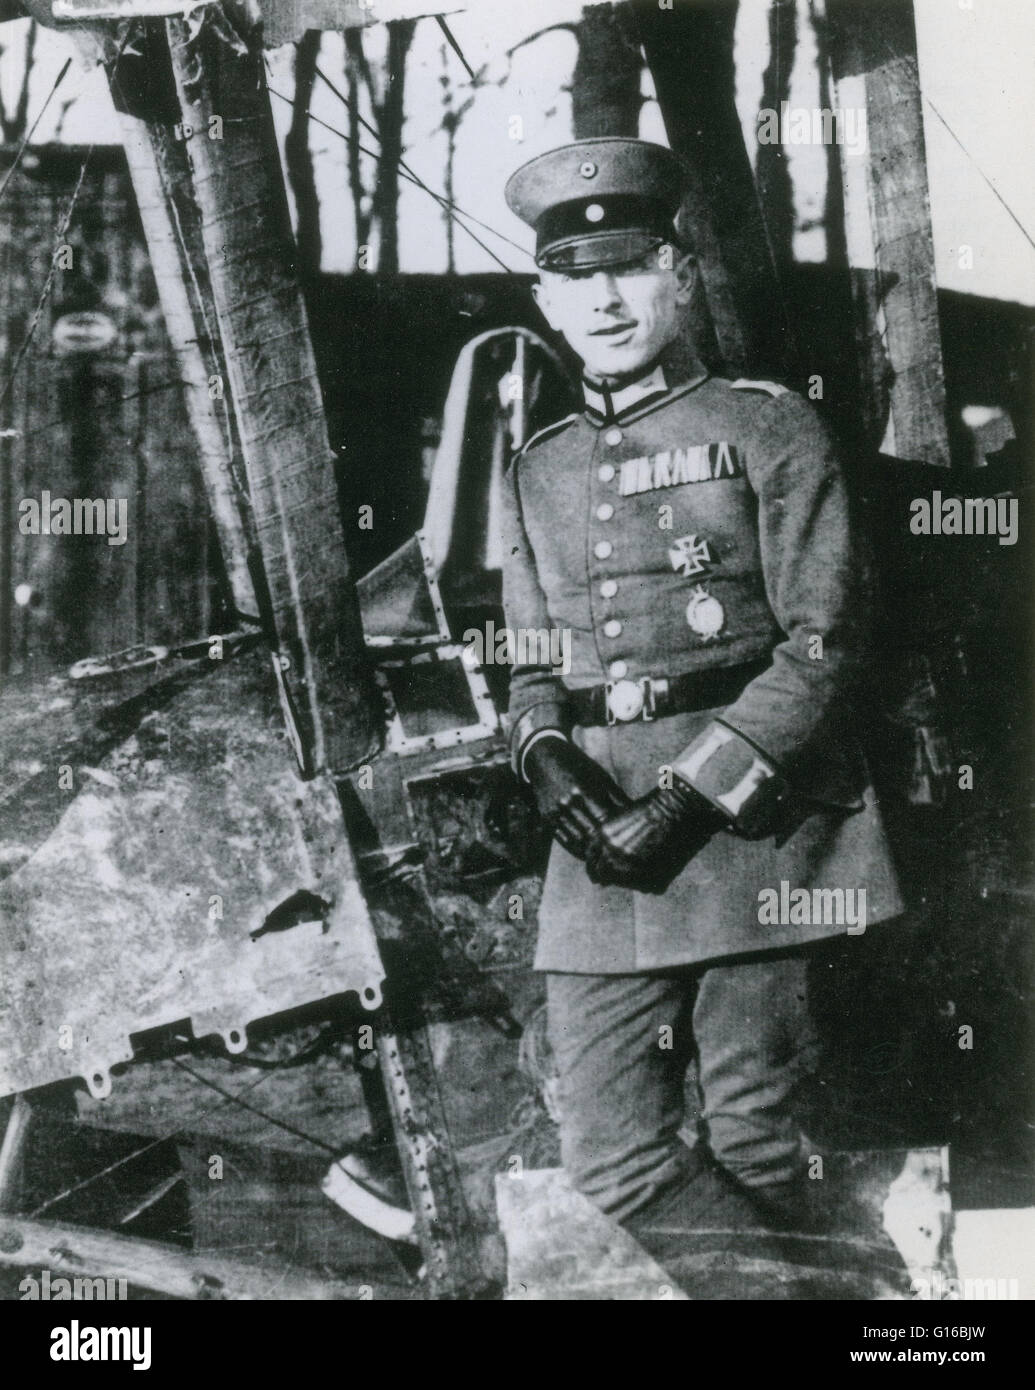 Immelmann posando junto a uno de sus enemigos. Max Immelmann (Septiembre 21, 1890 - Junio 18, 1916) fue el primer alemán WWI Flying Ace. Nació en Sudáfrica, pero optó por renunciar a su nacionalidad británica mientras estudiaba medicina en Alemania. Habiendo thereaft Foto de stock